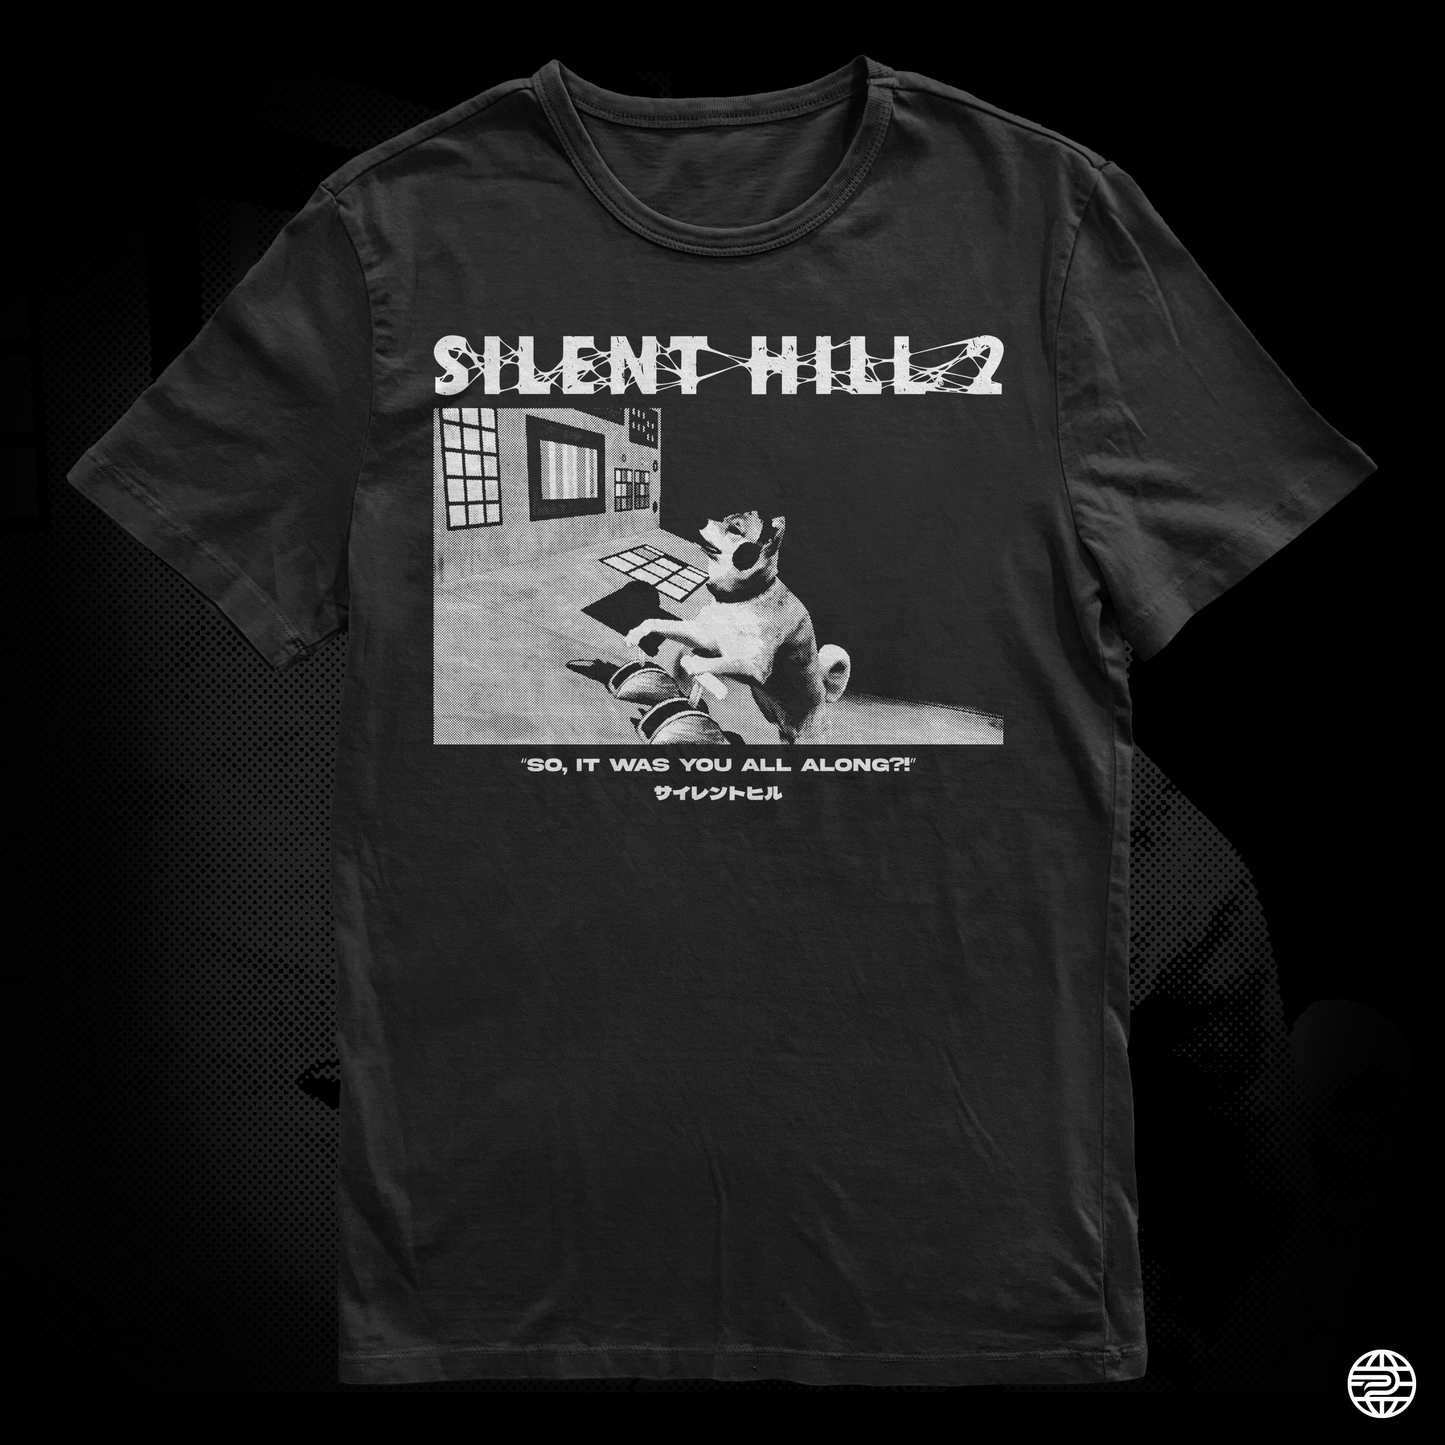 Silent Hill - "Dog Ending" Meme Tee